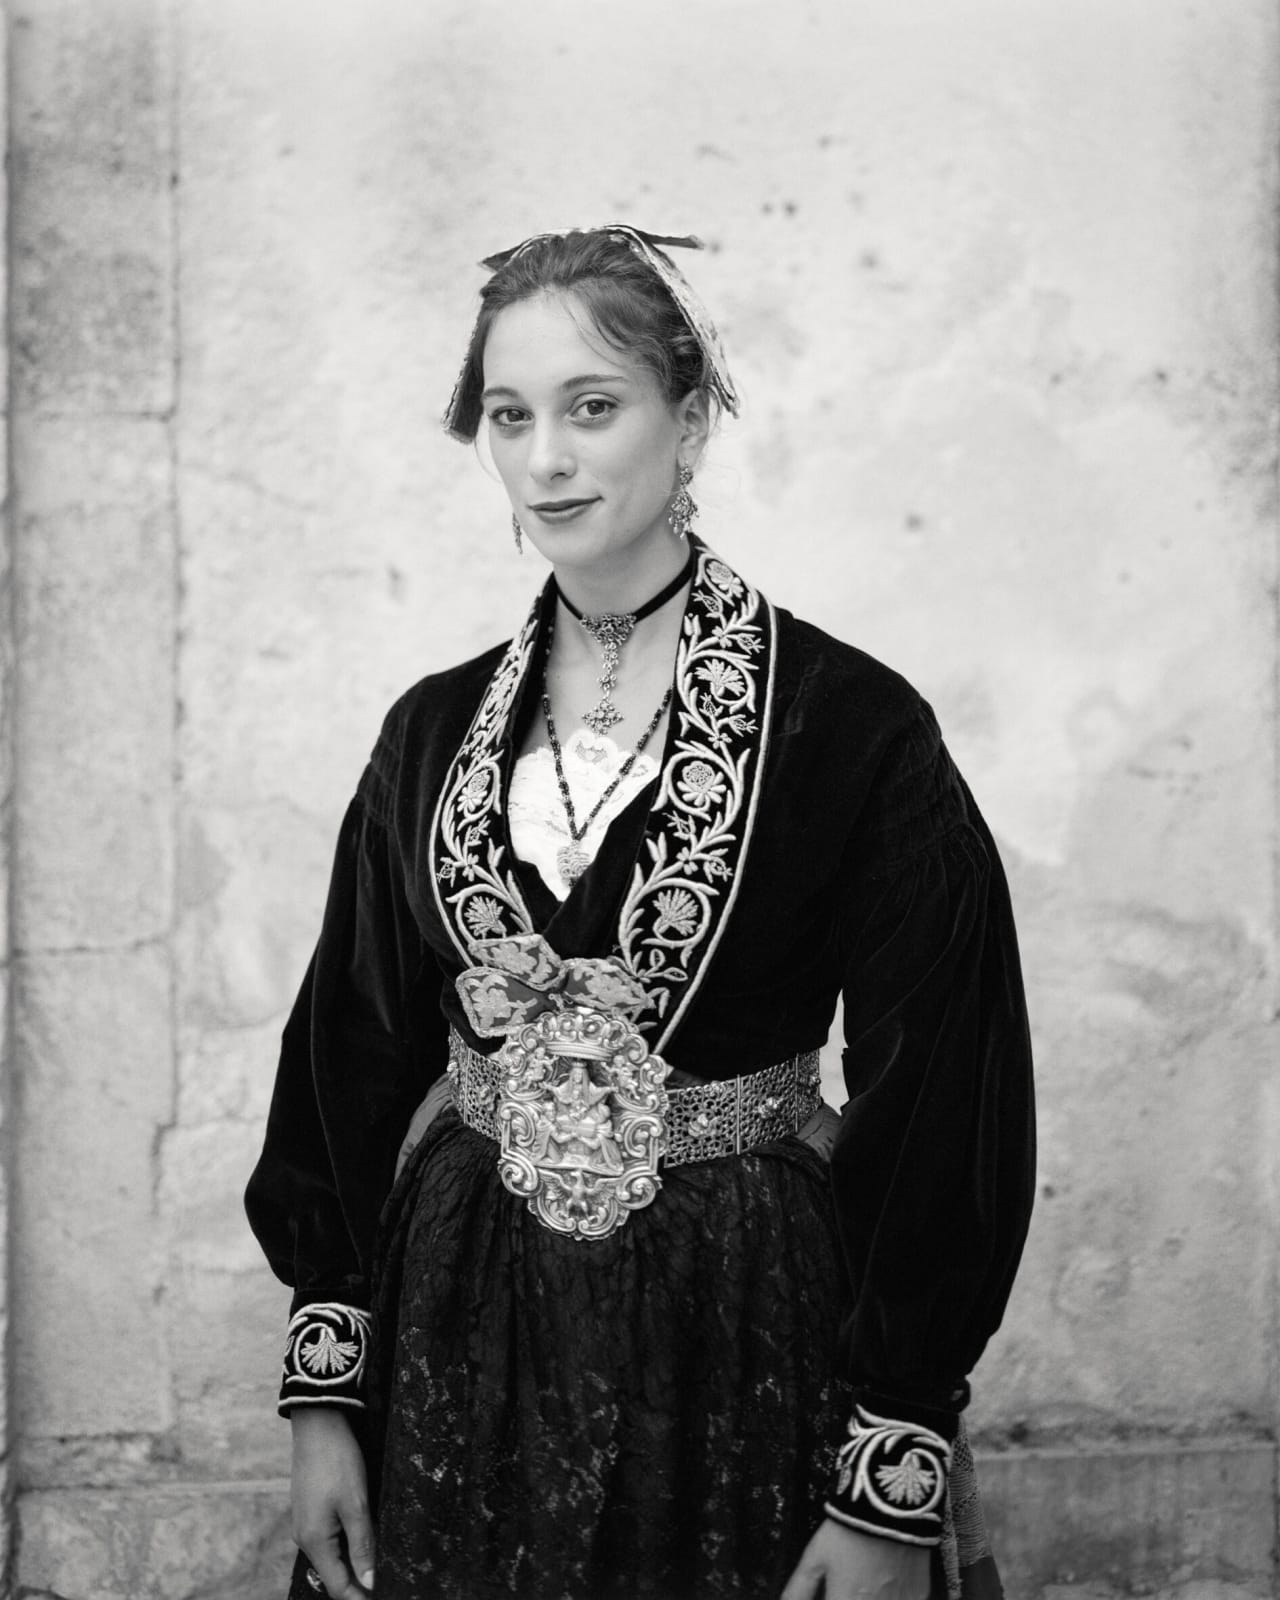 Alys Tomlinson, Ceremony traditional dress/Vestito tradizionale da festa,Piana degli Albanesi, 2020